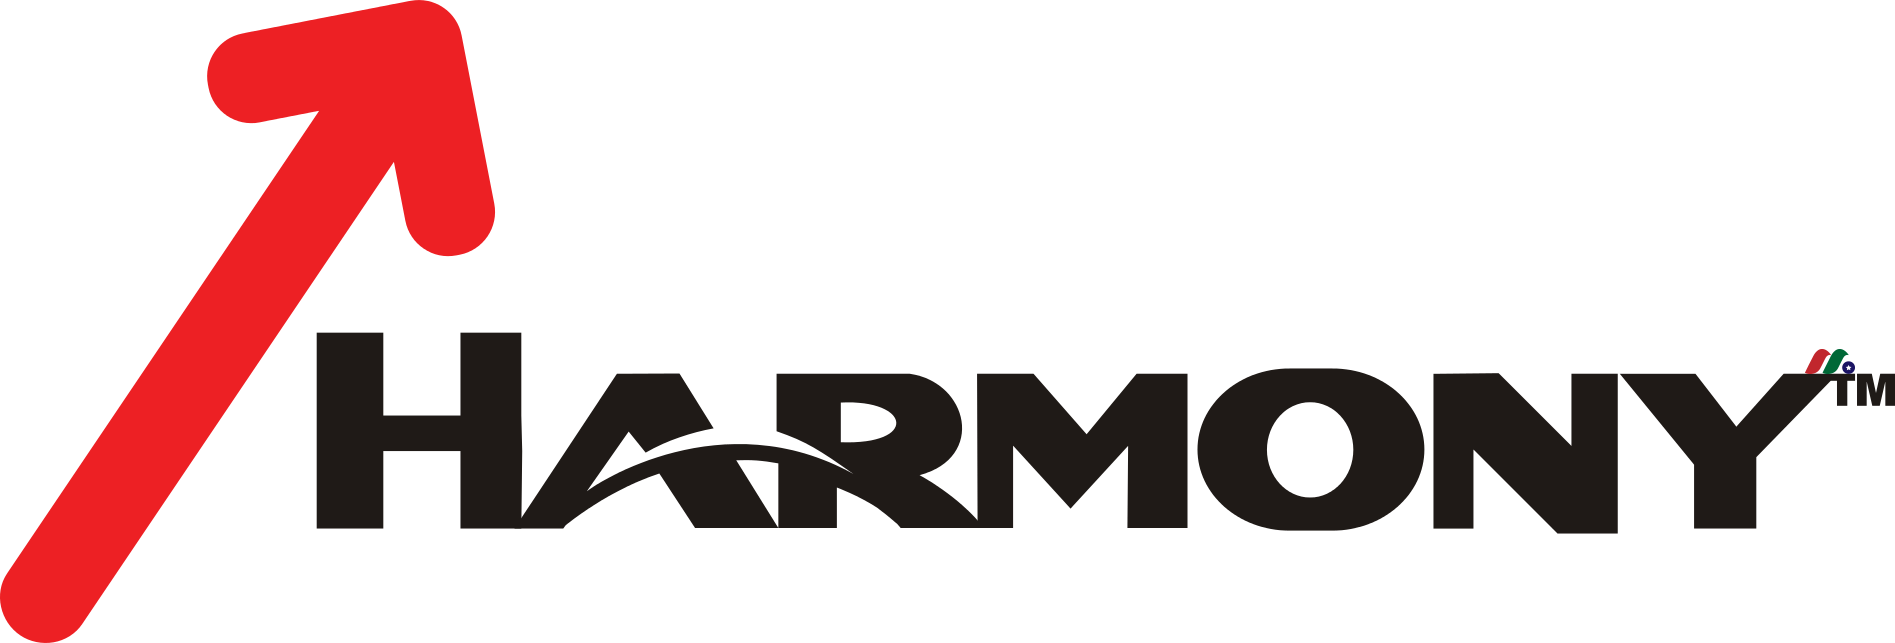 Harmony Gold Mining Company Limited HMY Logo